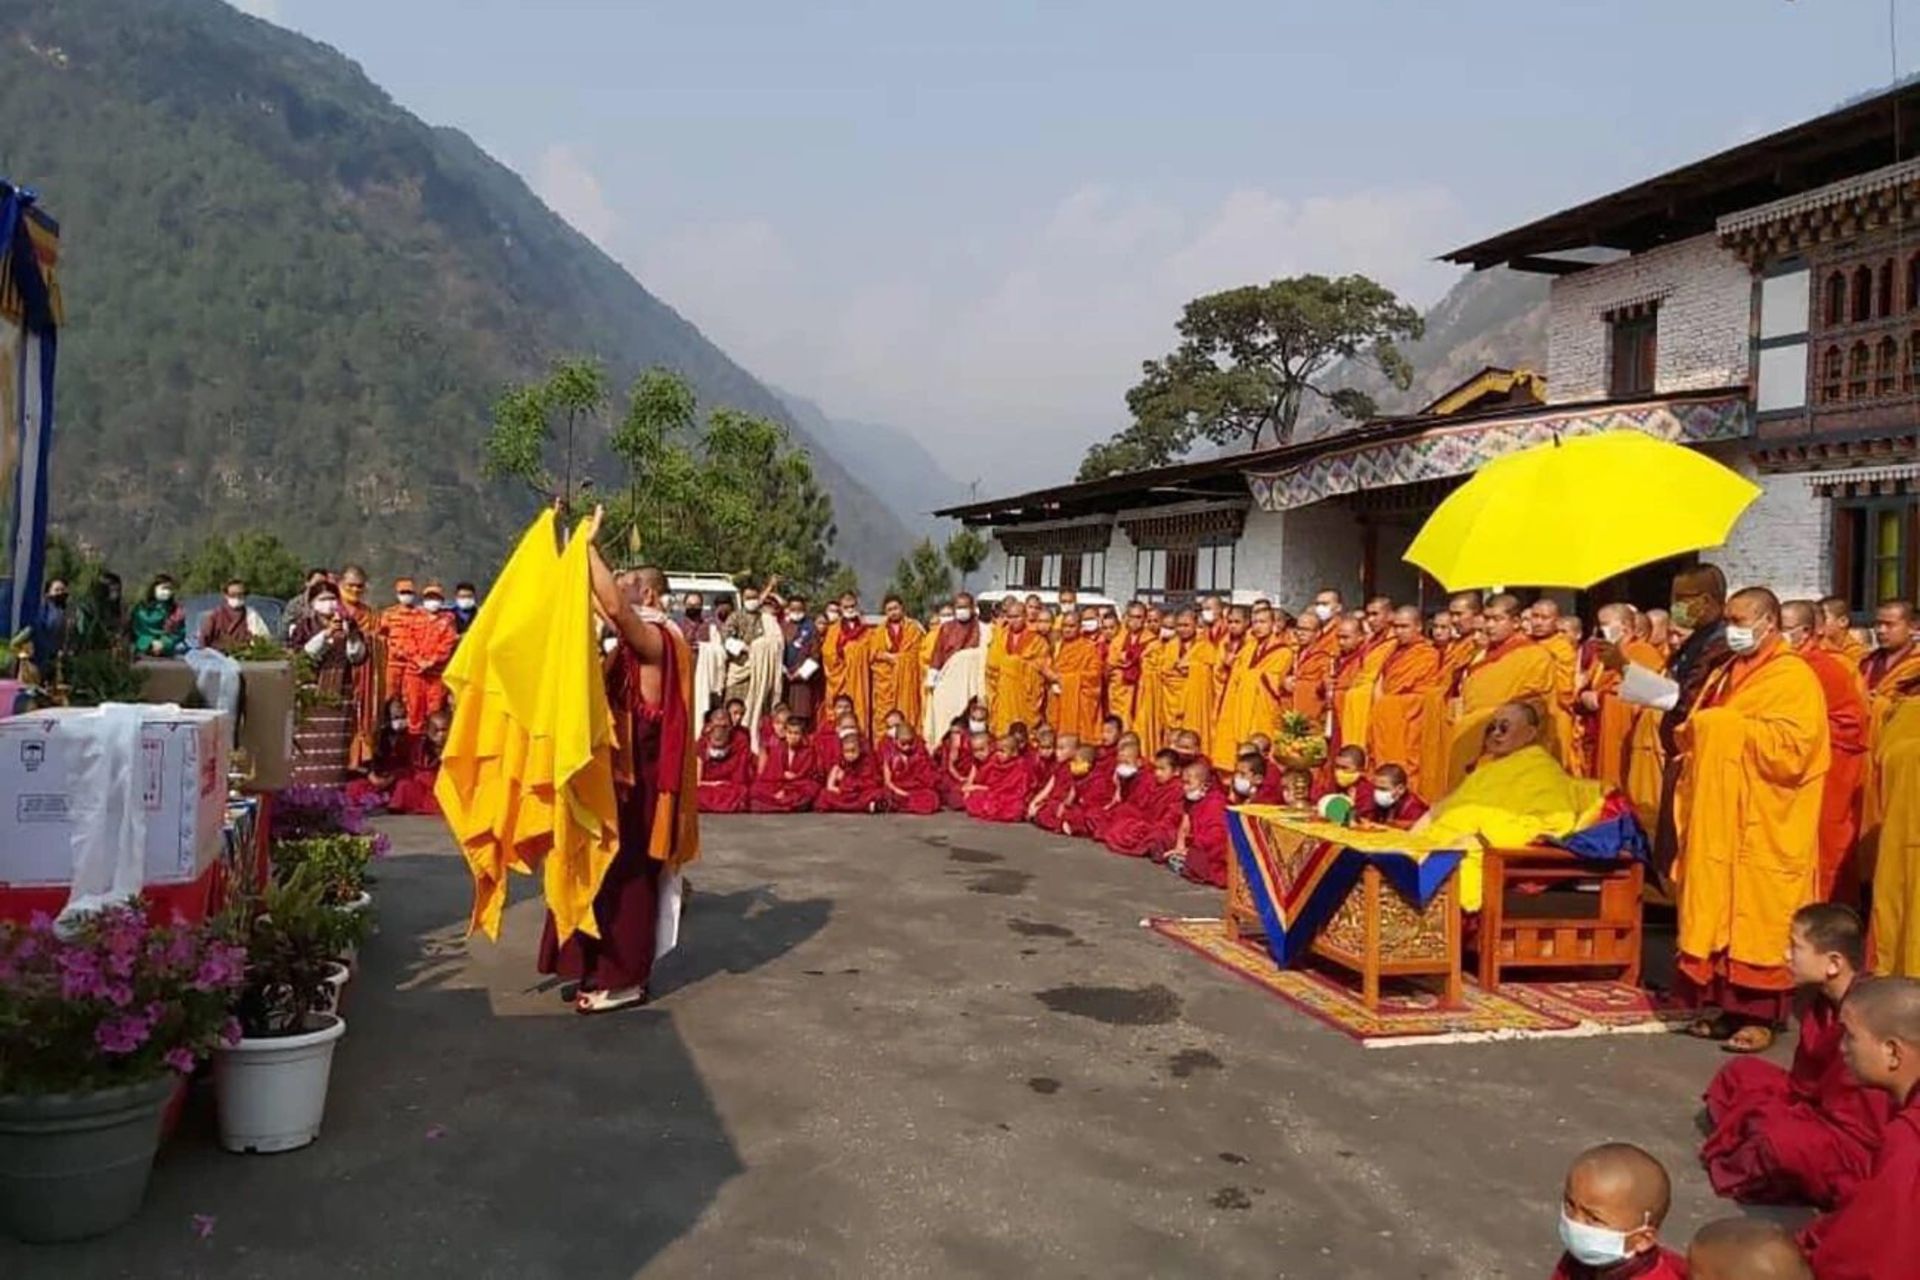 مرجع متخصصين ايران مراسم مذهبي بودايي همزمان با رسيدن واكسن كرونا در بوتان